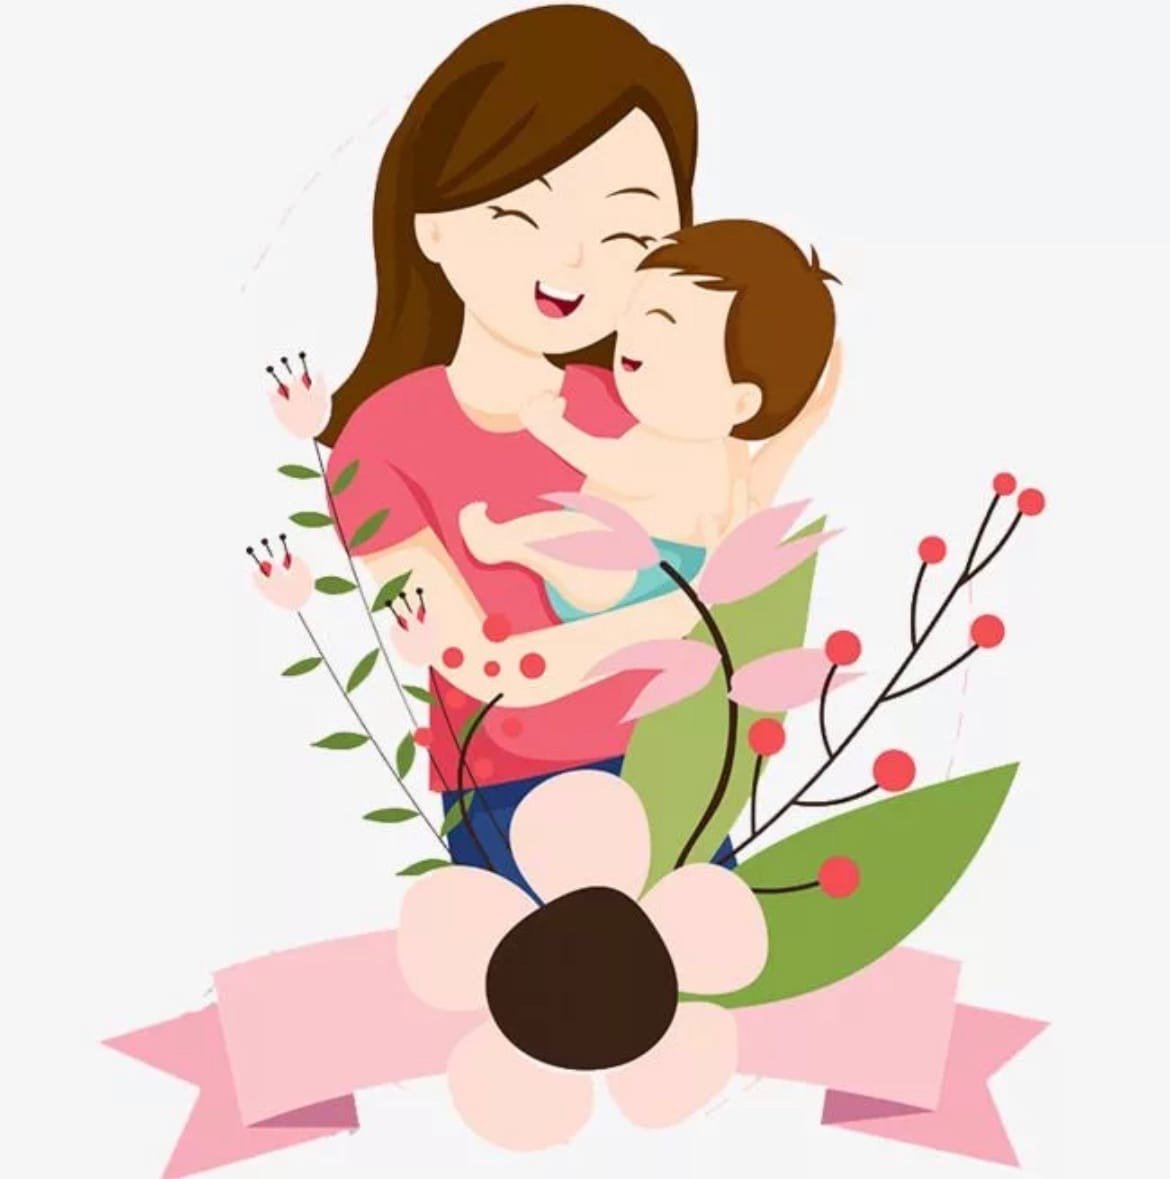 Цветные мамы. Рисунок ко Дню матери. День матери иллюстрации. Мама картинка для детей. Рисунок маме на день матери.